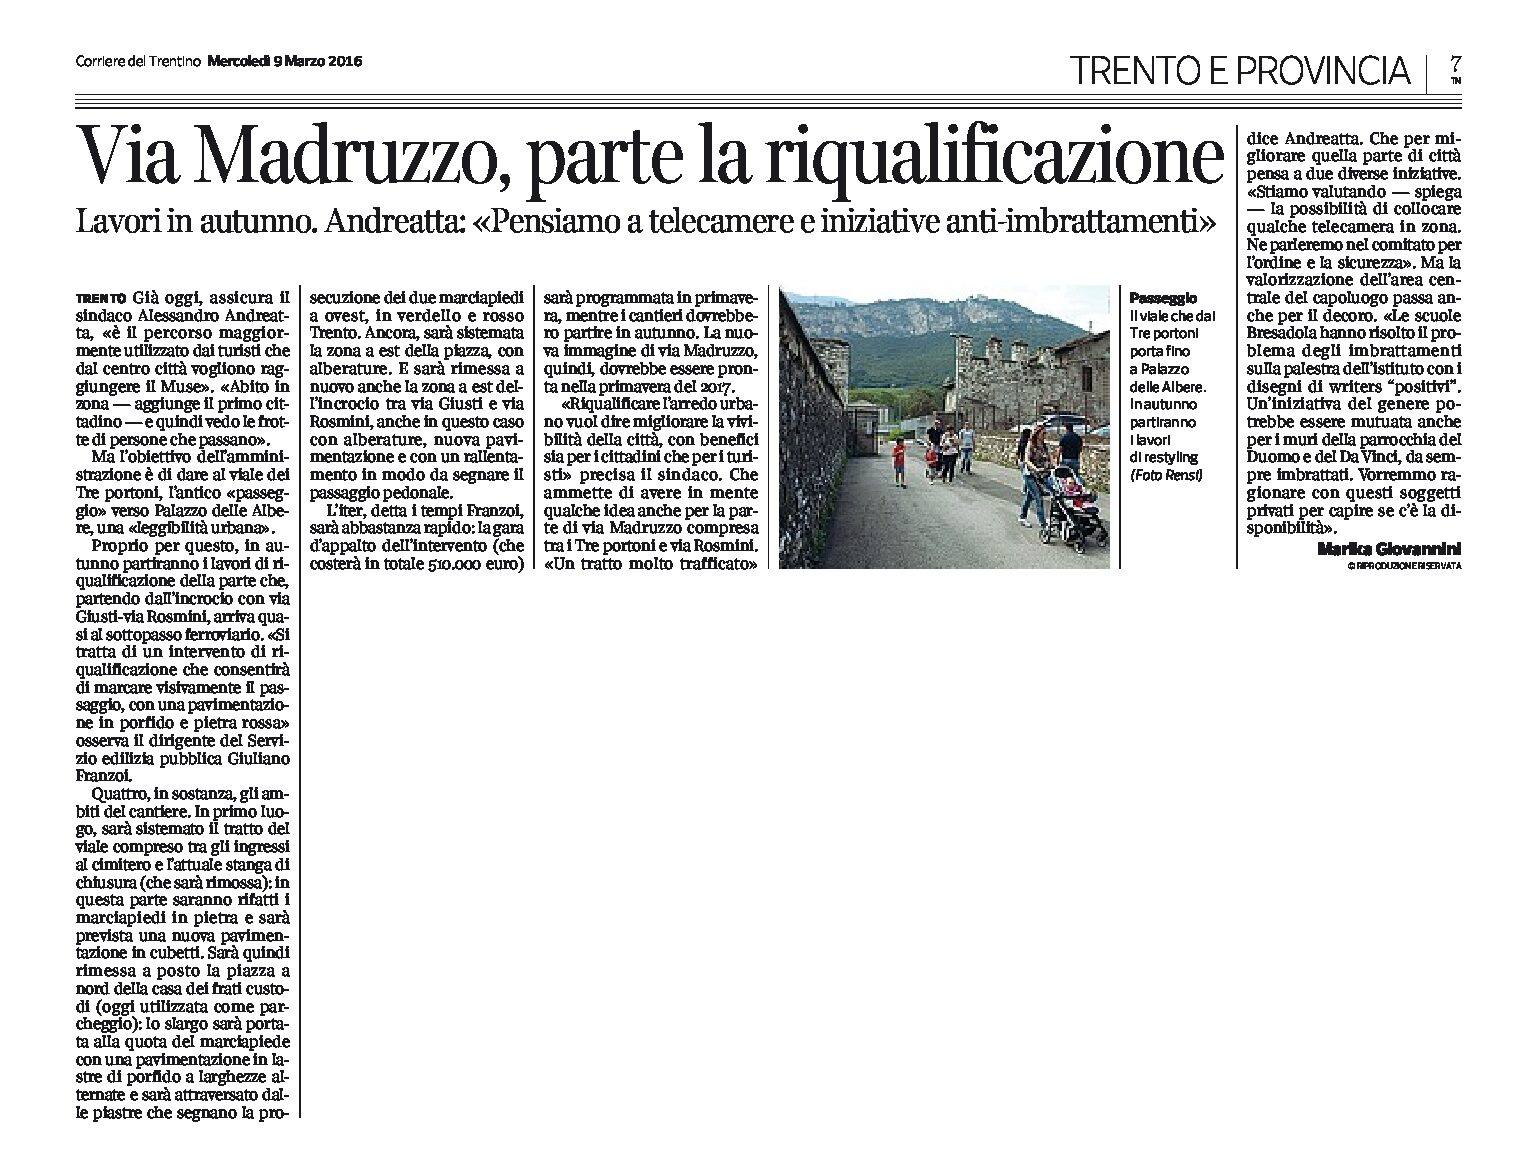 Trento, via Madruzzo: parte la riqualificazione, lavori in autunno